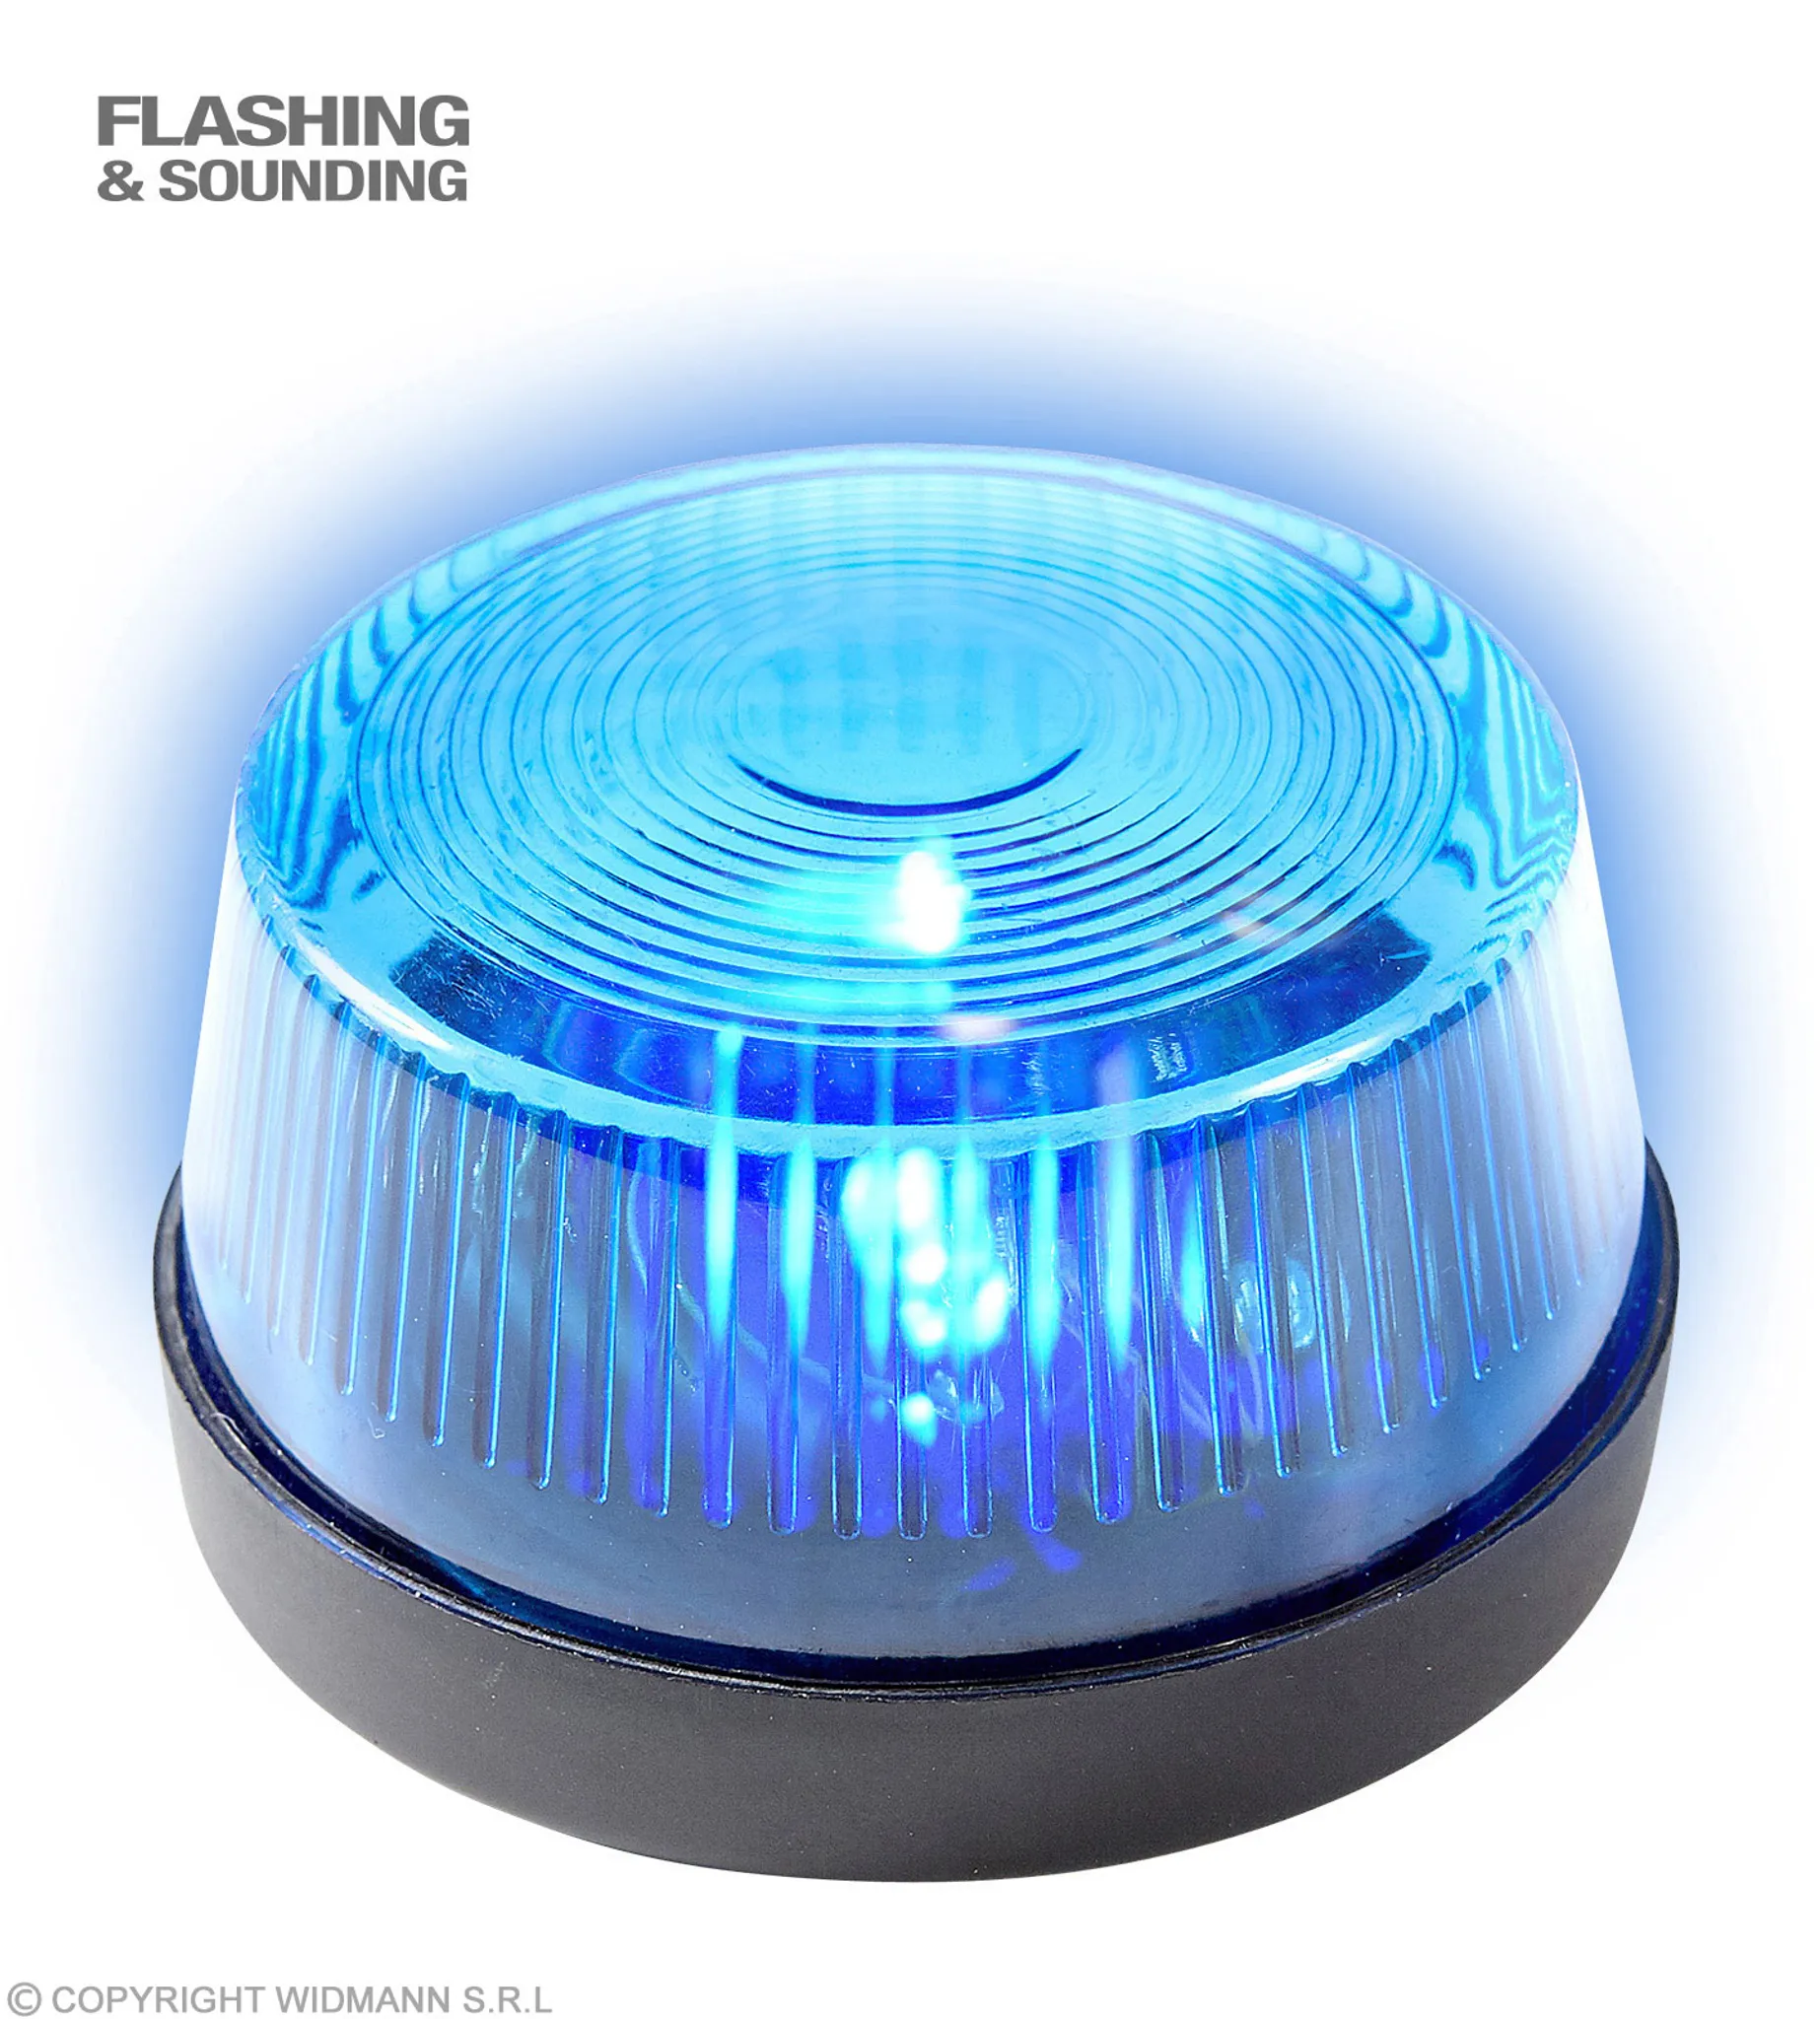 Sirene Blaulicht Swissphone FME DME Licht Orientierungslicht Lampe